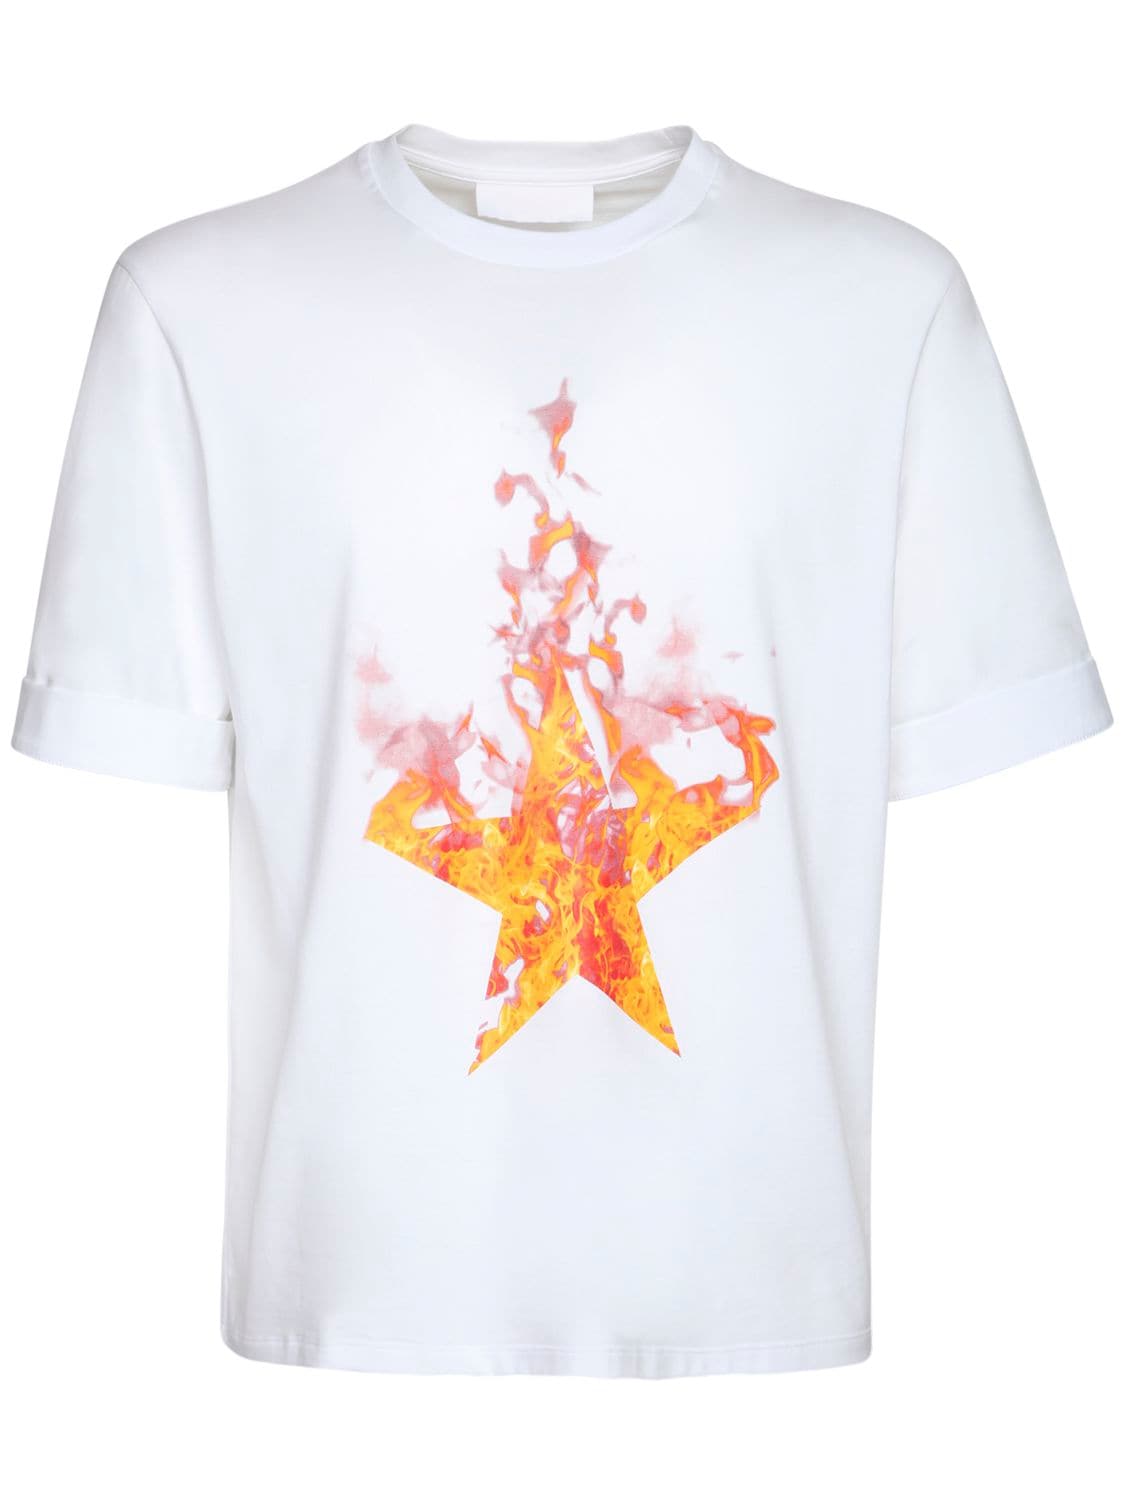 NEIL BARRETT FIRED STAR PRINT COTTON JERSEY T-SHIRT,72ILBI013-MJG1MA2